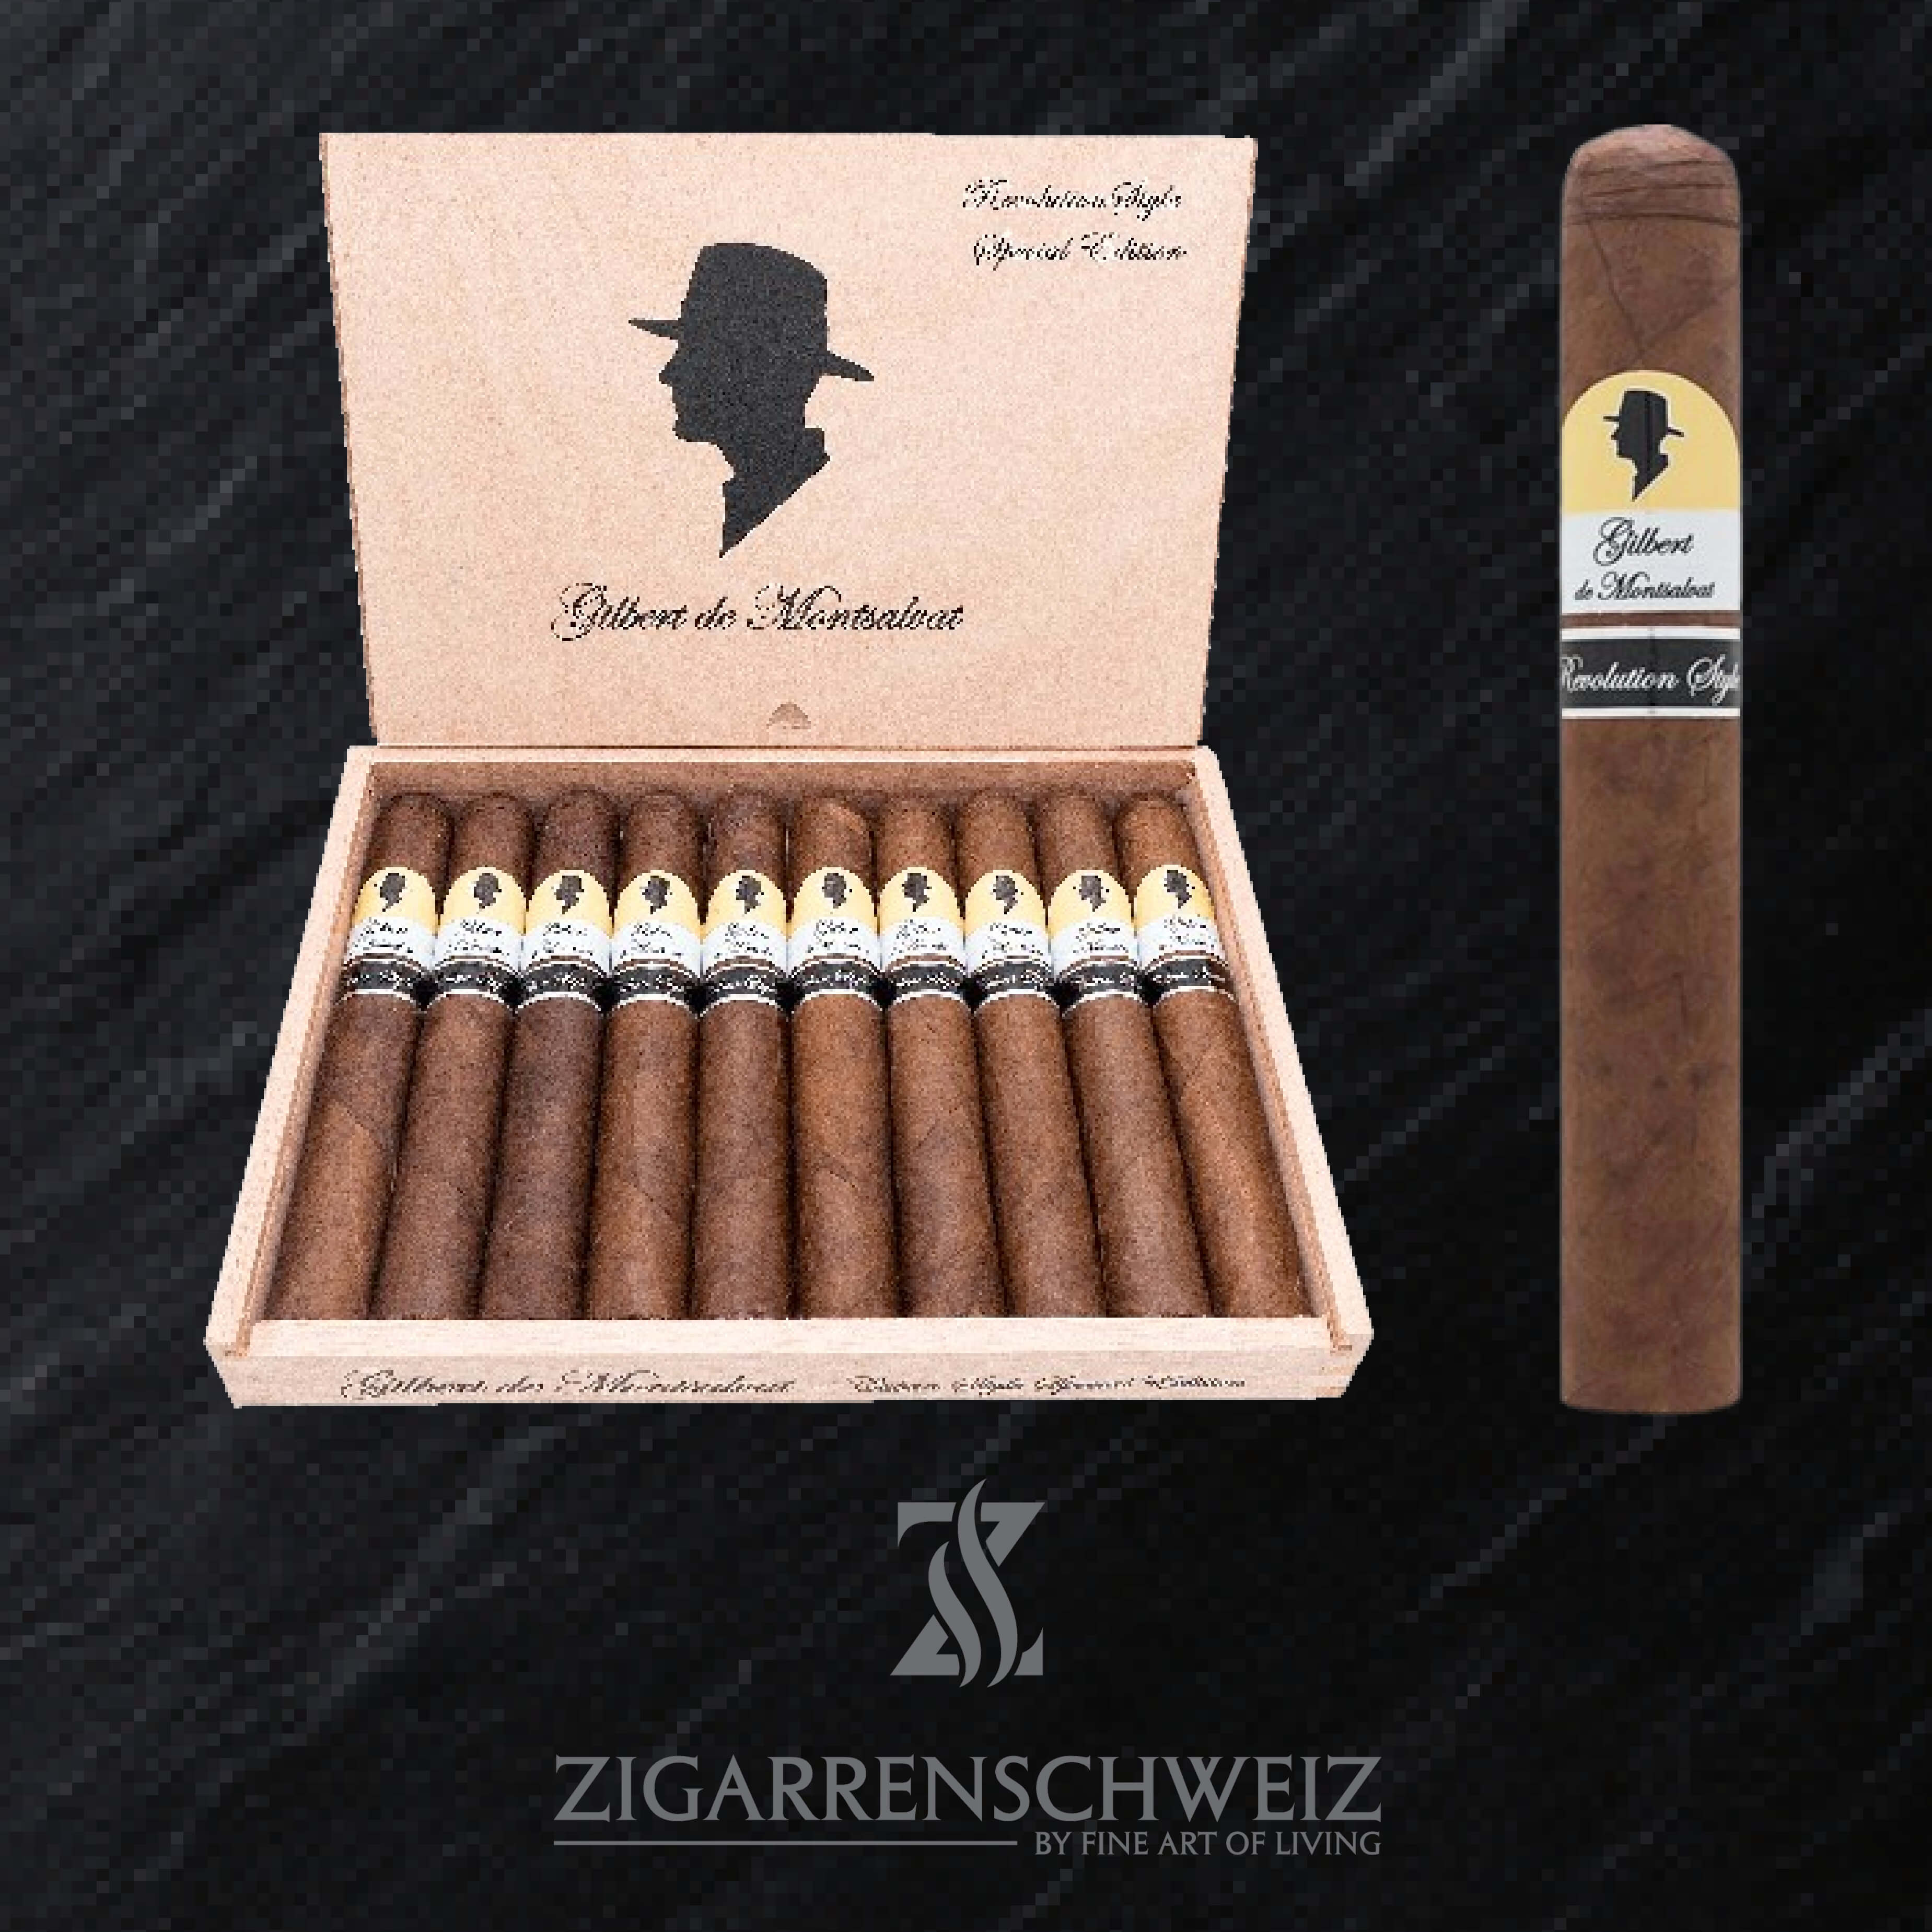 Gilbert de Montsalvat Revolution Style Special Edition Zigarren Kiste offen